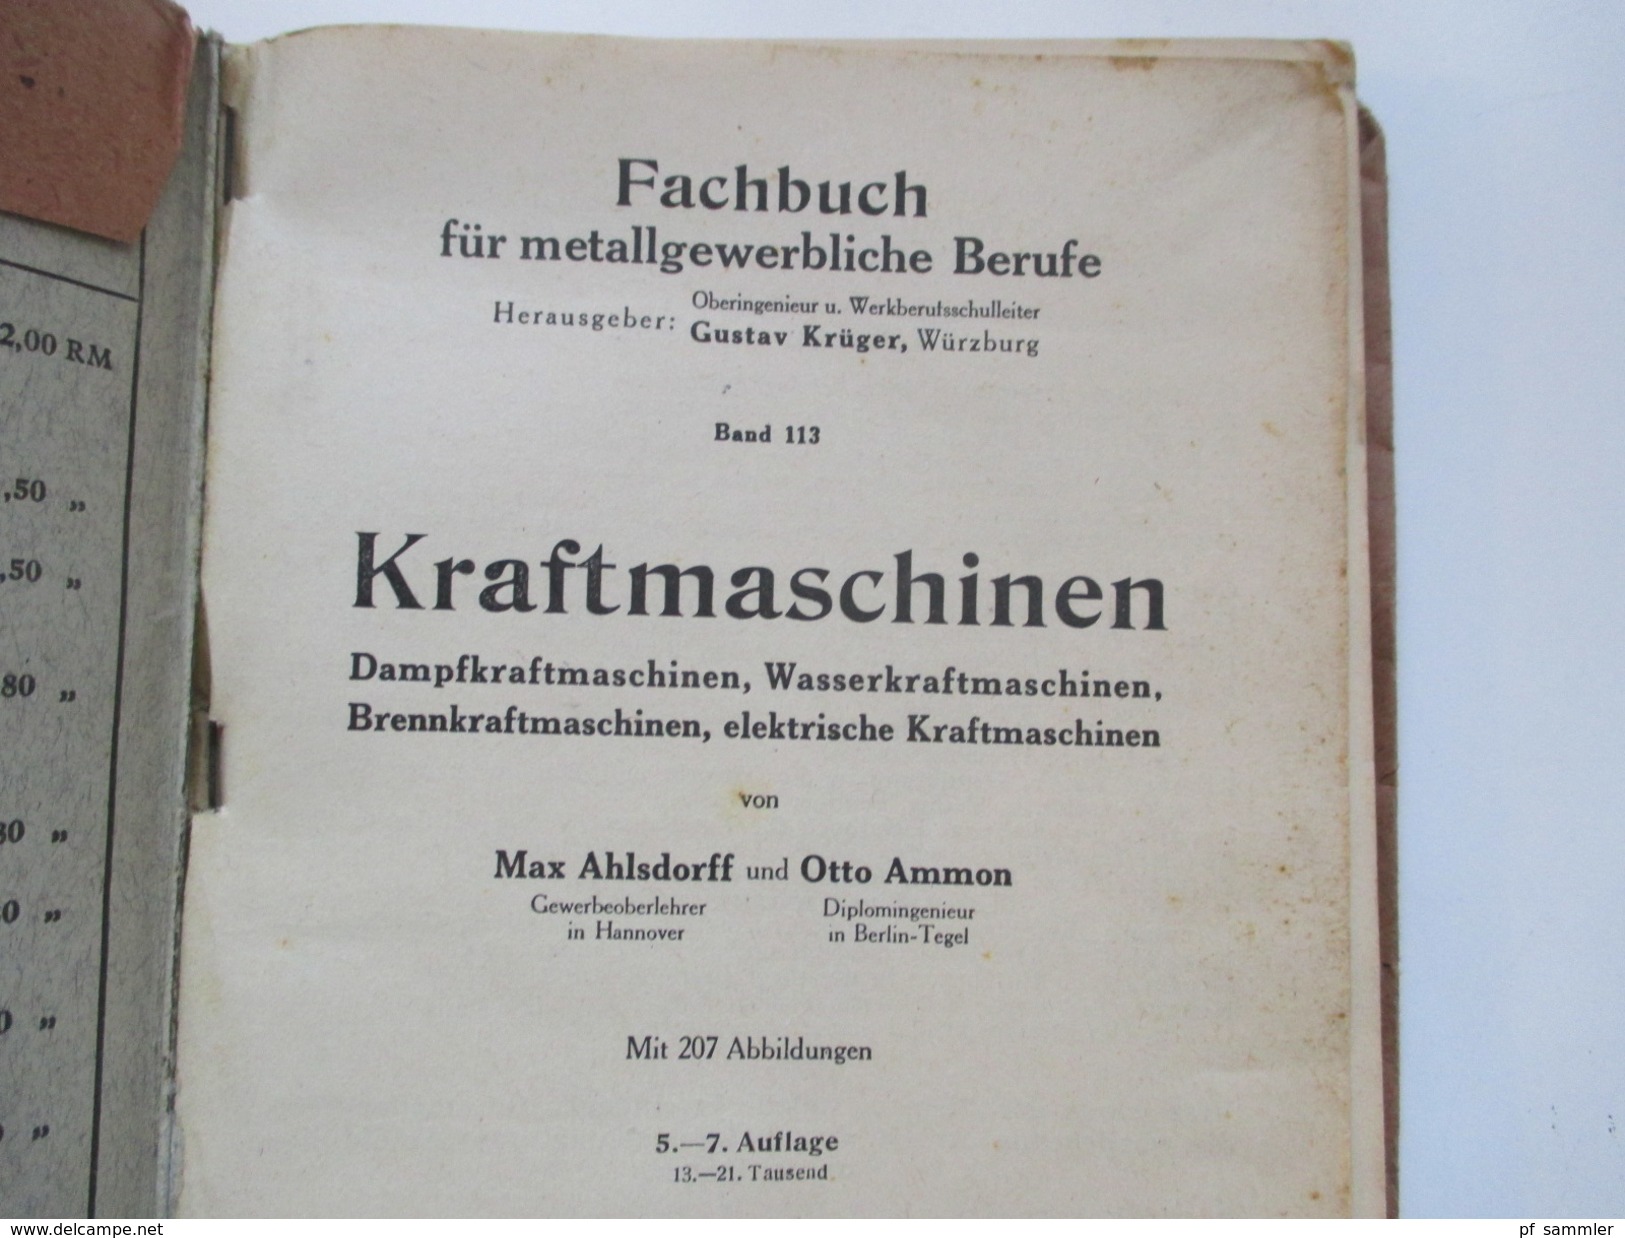 Schulbuch 1945 Kraftmaschinen. Dampfmaschinen Usw. Gebrüder Jänecke Buchverlag Hannover. Viele Abbildungen!! - School Books